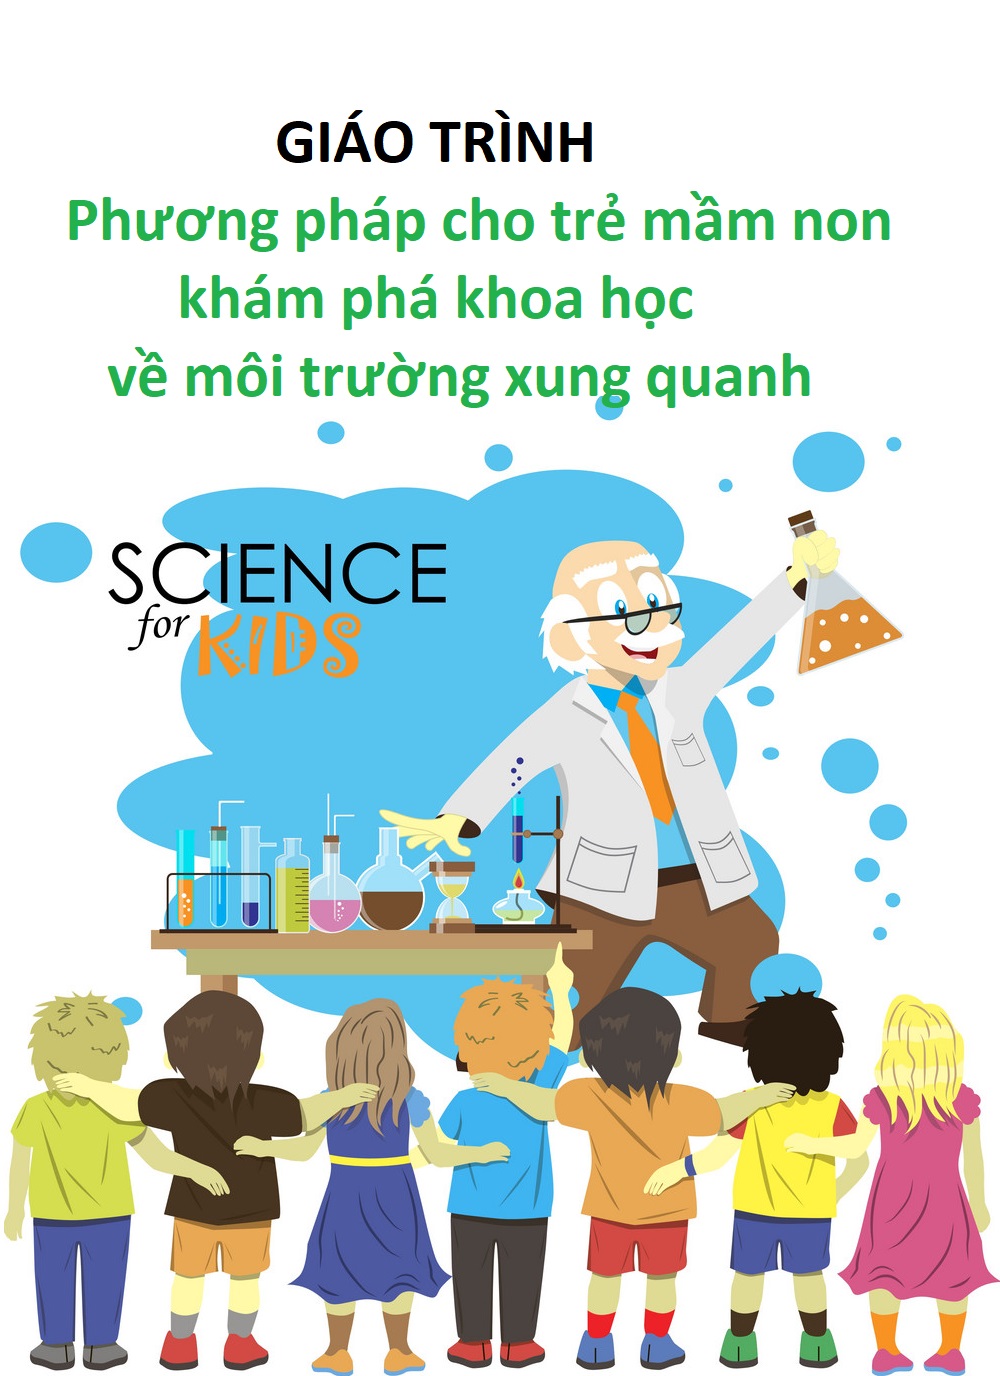 Sách nói: Giáo trình Phương pháp cho trẻ mầm non khám phá khoa học về môi trường xung quanh